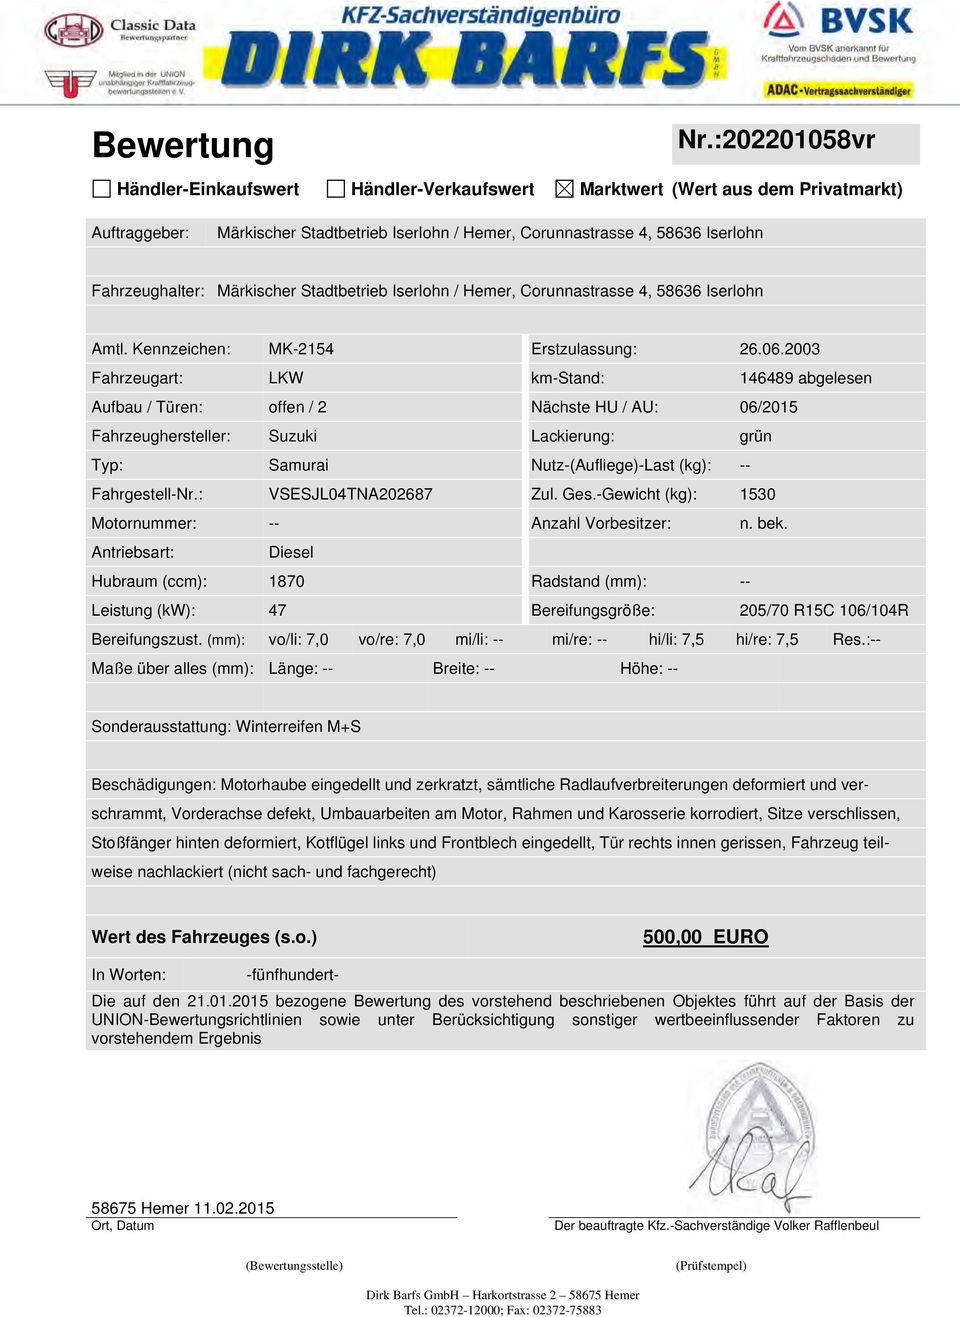 Märkischer Stadtbetrieb Iserlohn / Hemer, Corunnastrasse 4, 58636 Iserlohn Amtl. Kennzeichen: MK-2154 Erstzulassung: 26.06.